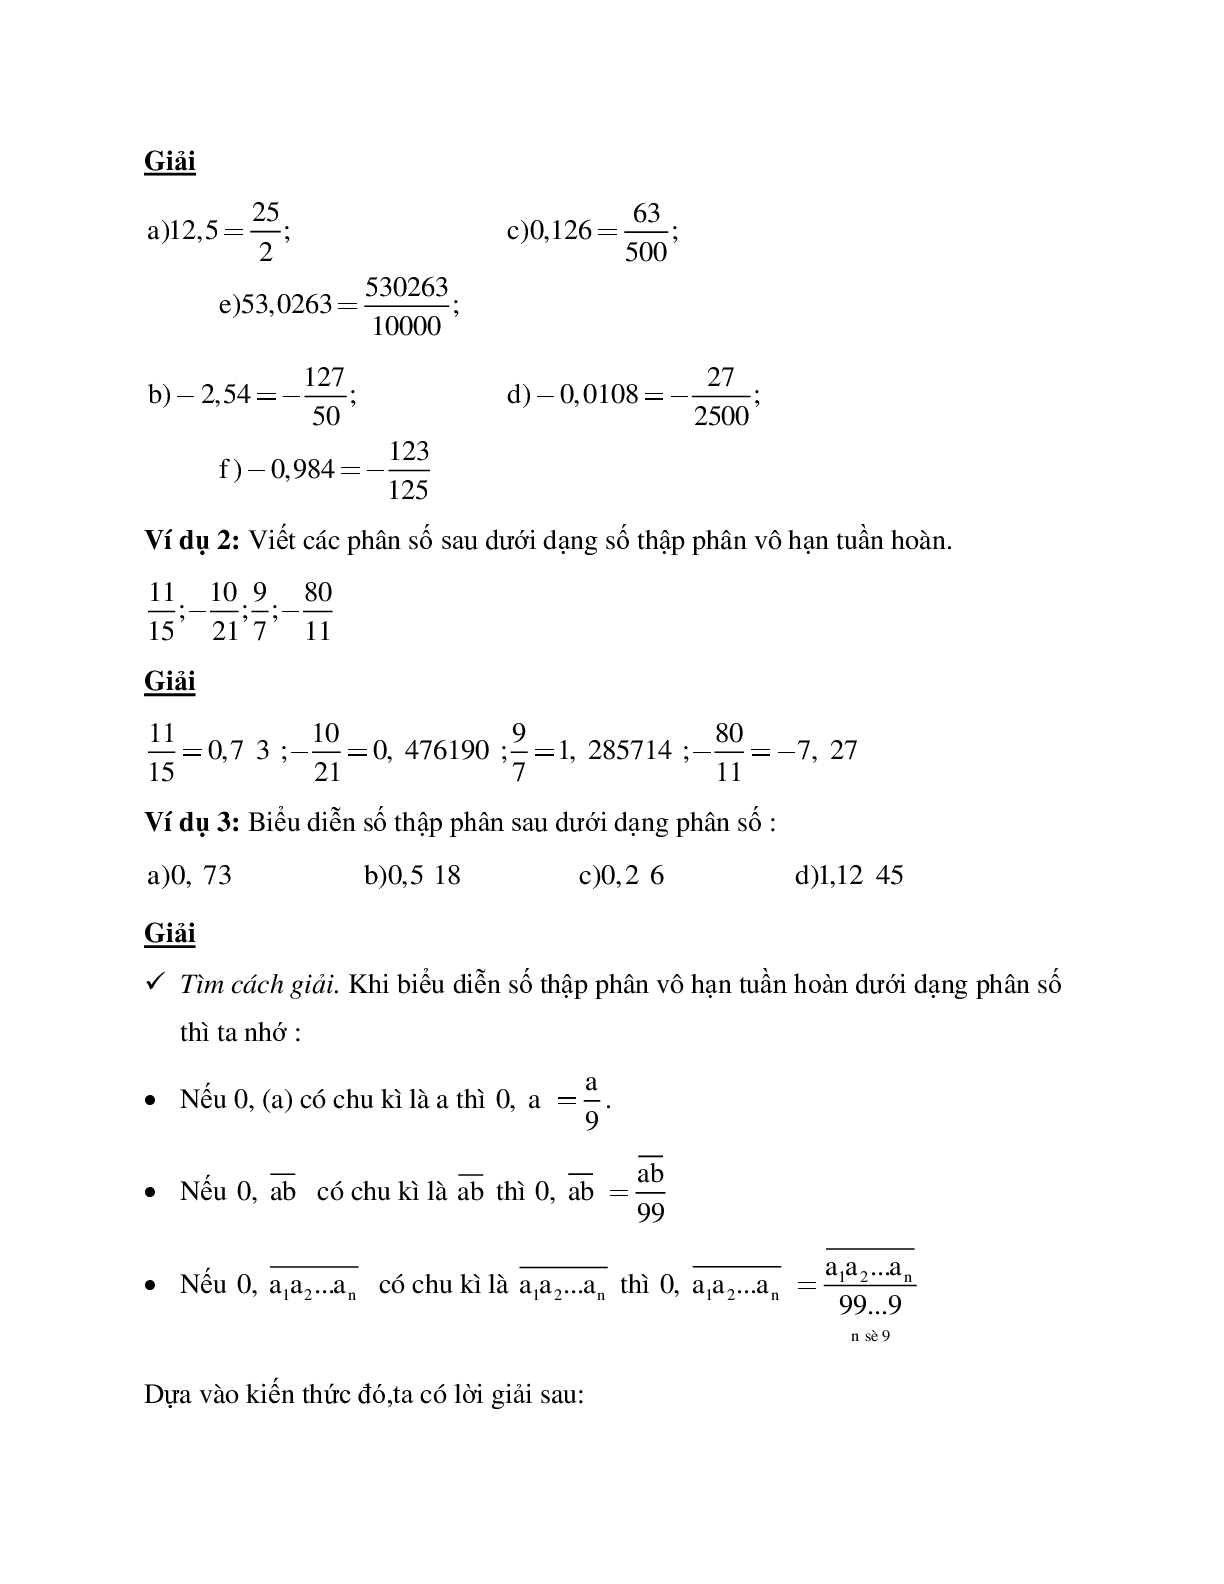 Hệ thống bài tập về Số thập phân hữu hạn - Số thập phân vô hạn tuần hoàn - Làm tròn số có lời giải (trang 2)